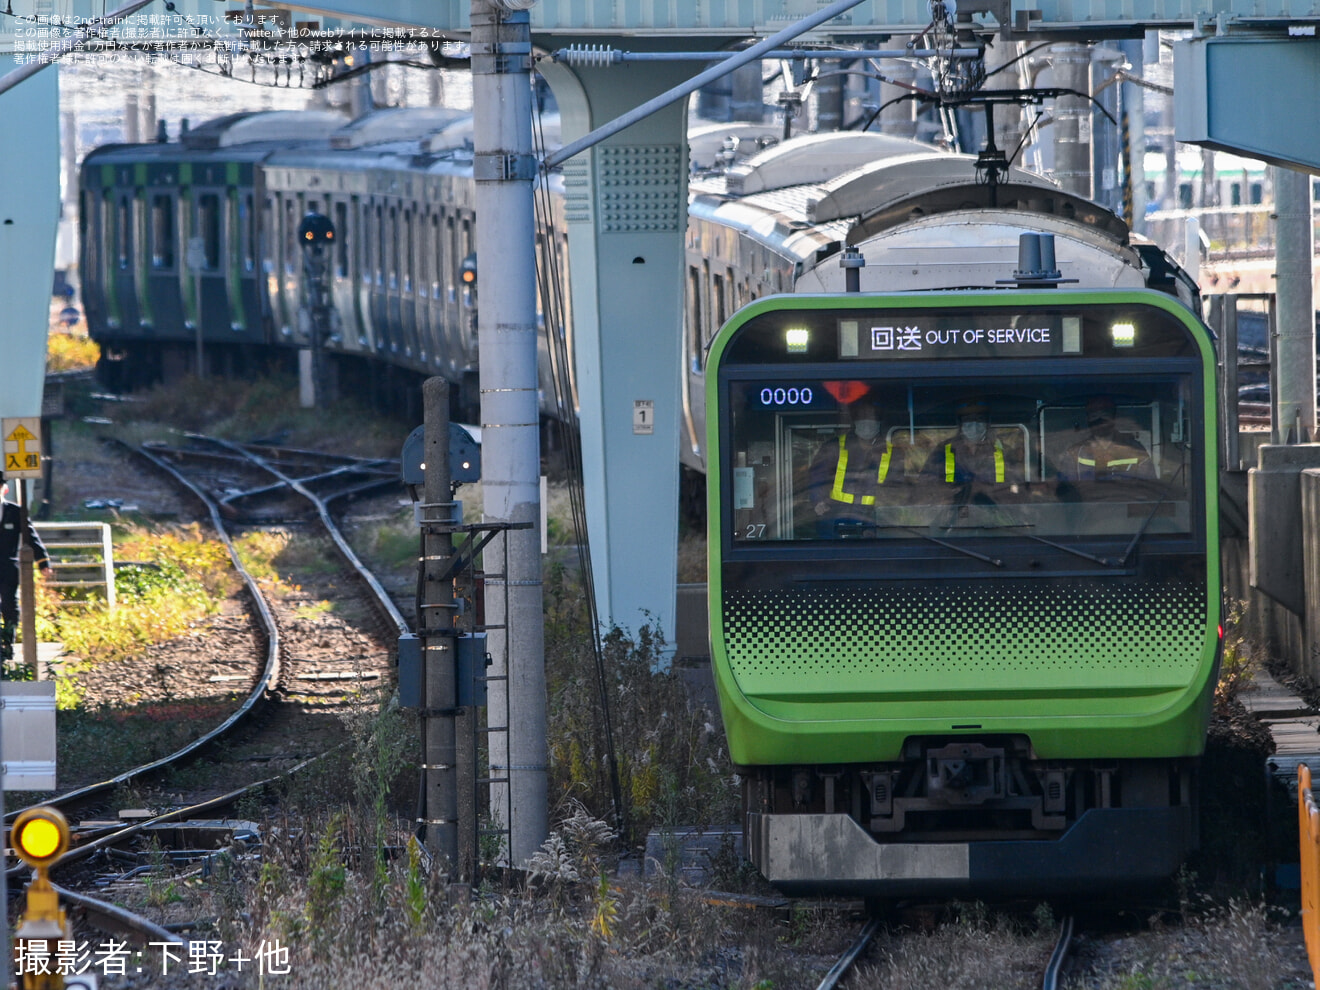 【JR東】E235系トウ27編成 東京総合車両センタ一入場の拡大写真